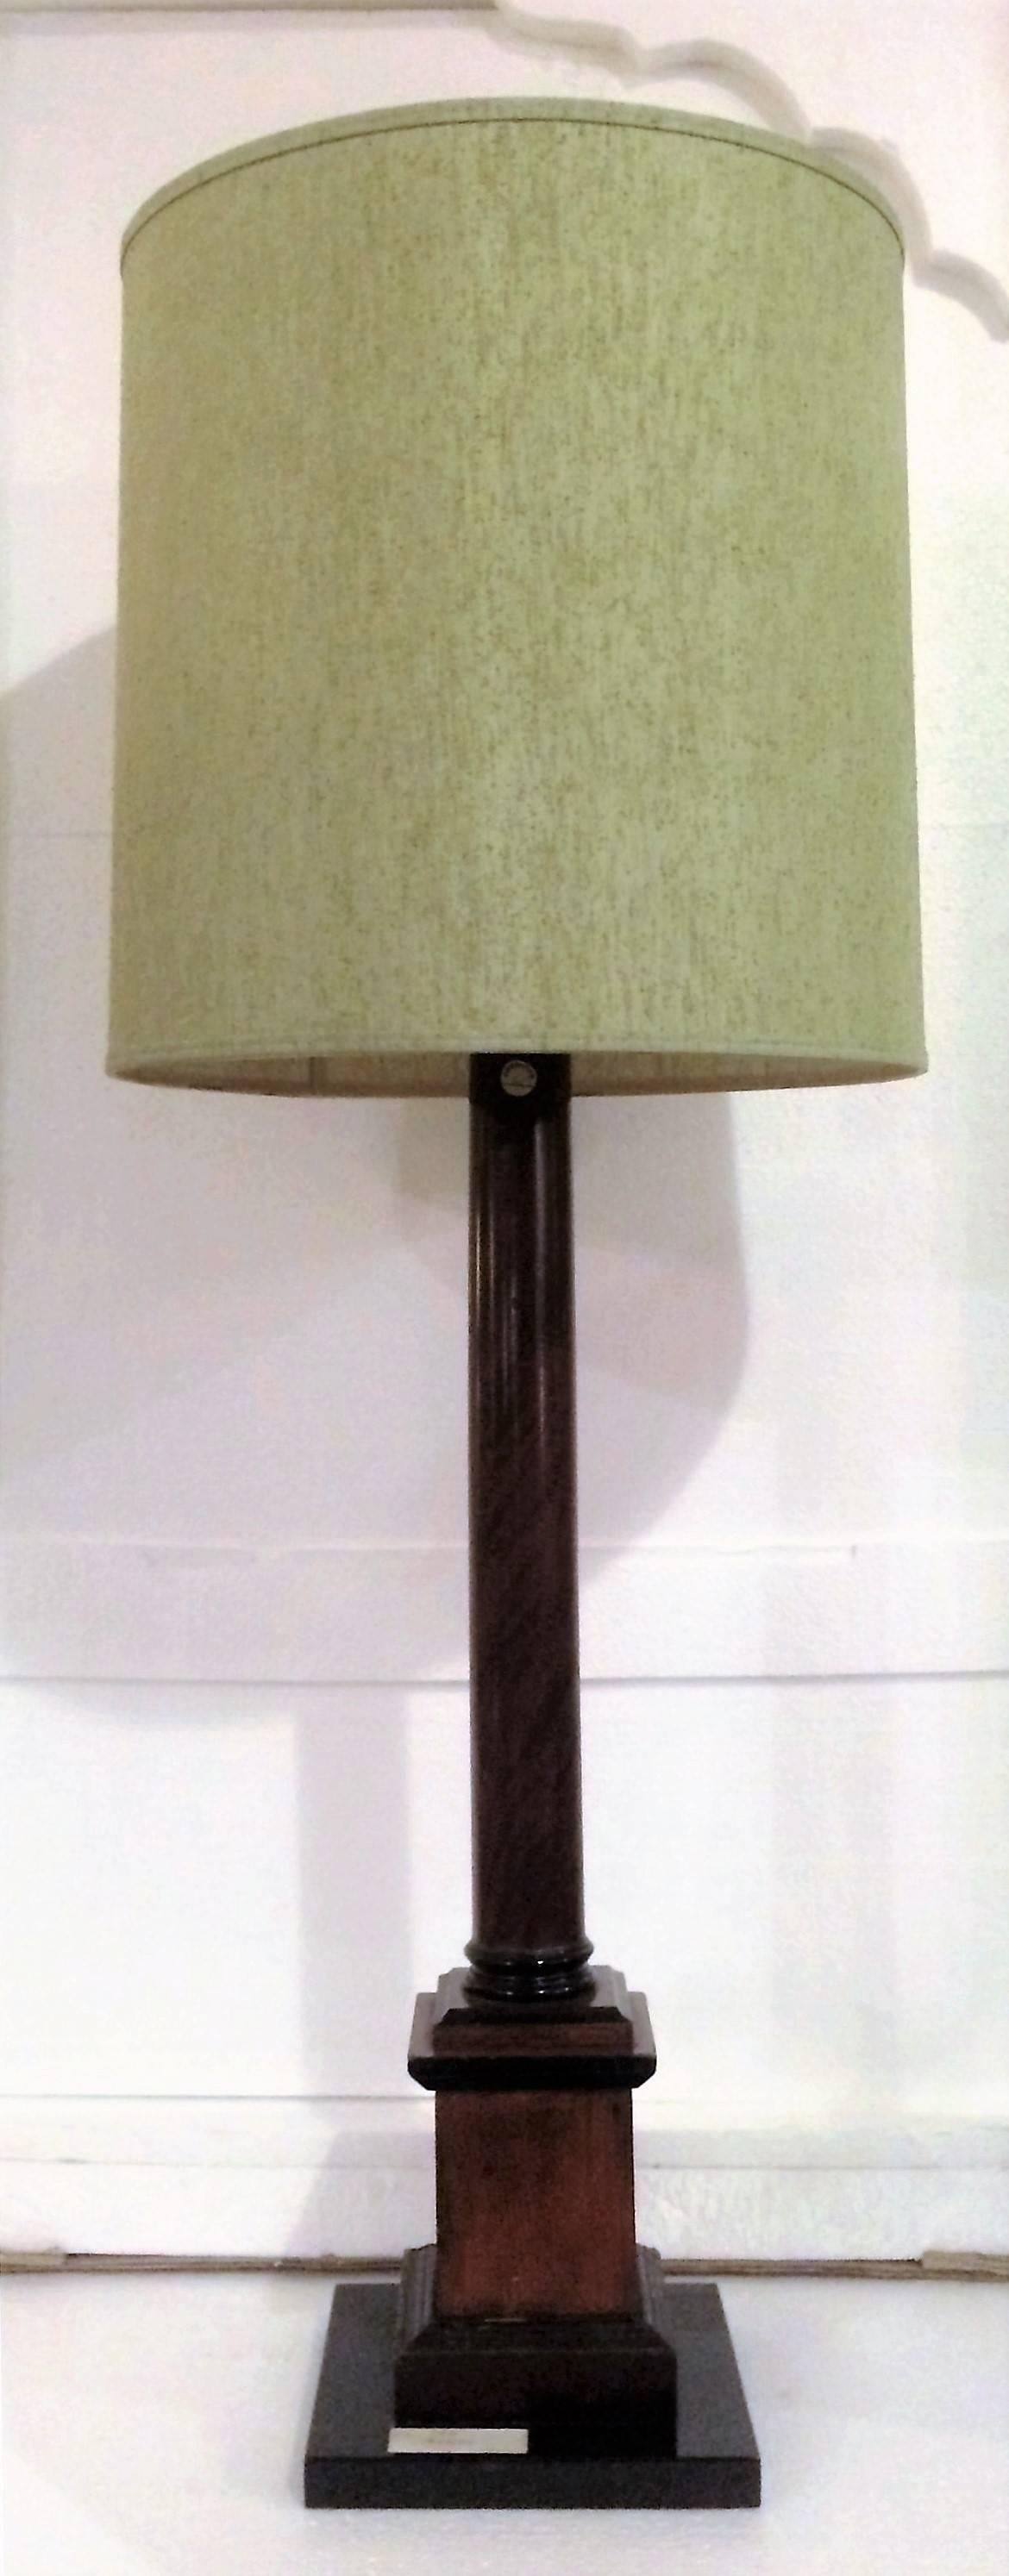 Diese Lampe im Stil einer Stablampe von Christie's NY aus dem 19. Jahrhundert ist aus Mahagoni mit Ebenholzakzenten gefertigt und auf einem gestuften Sockel montiert. Der Lampensockel selbst ist 34 Zoll hoch, mit dem Schirm ist er 44 Zoll hoch.

